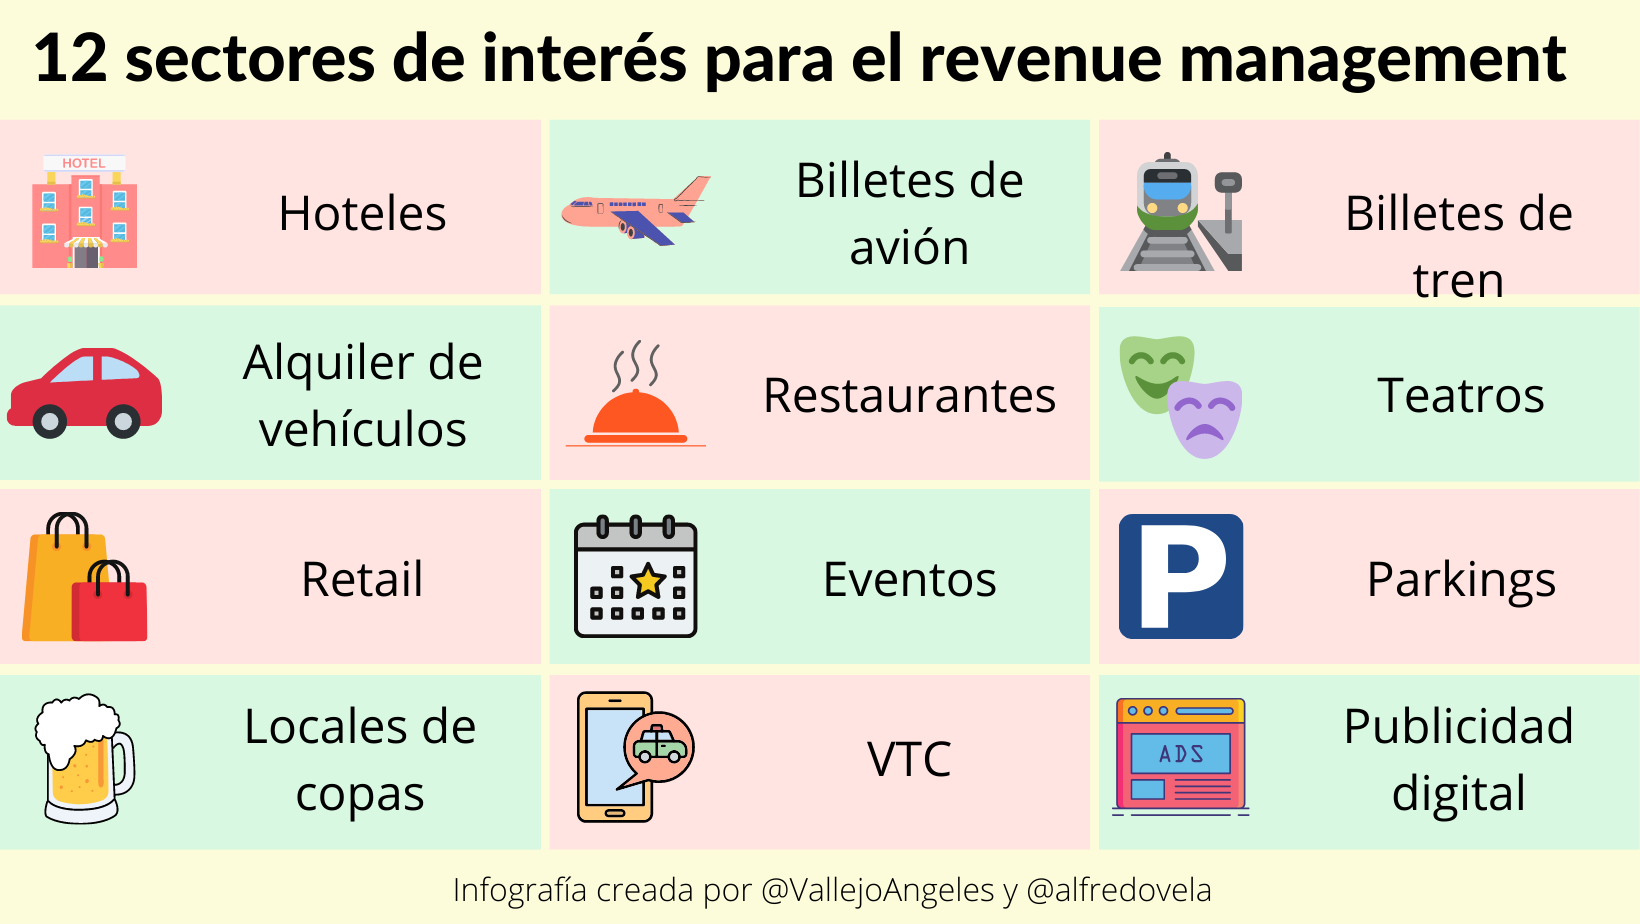 12 sectores de interés para el revenue management #infografia #marketing